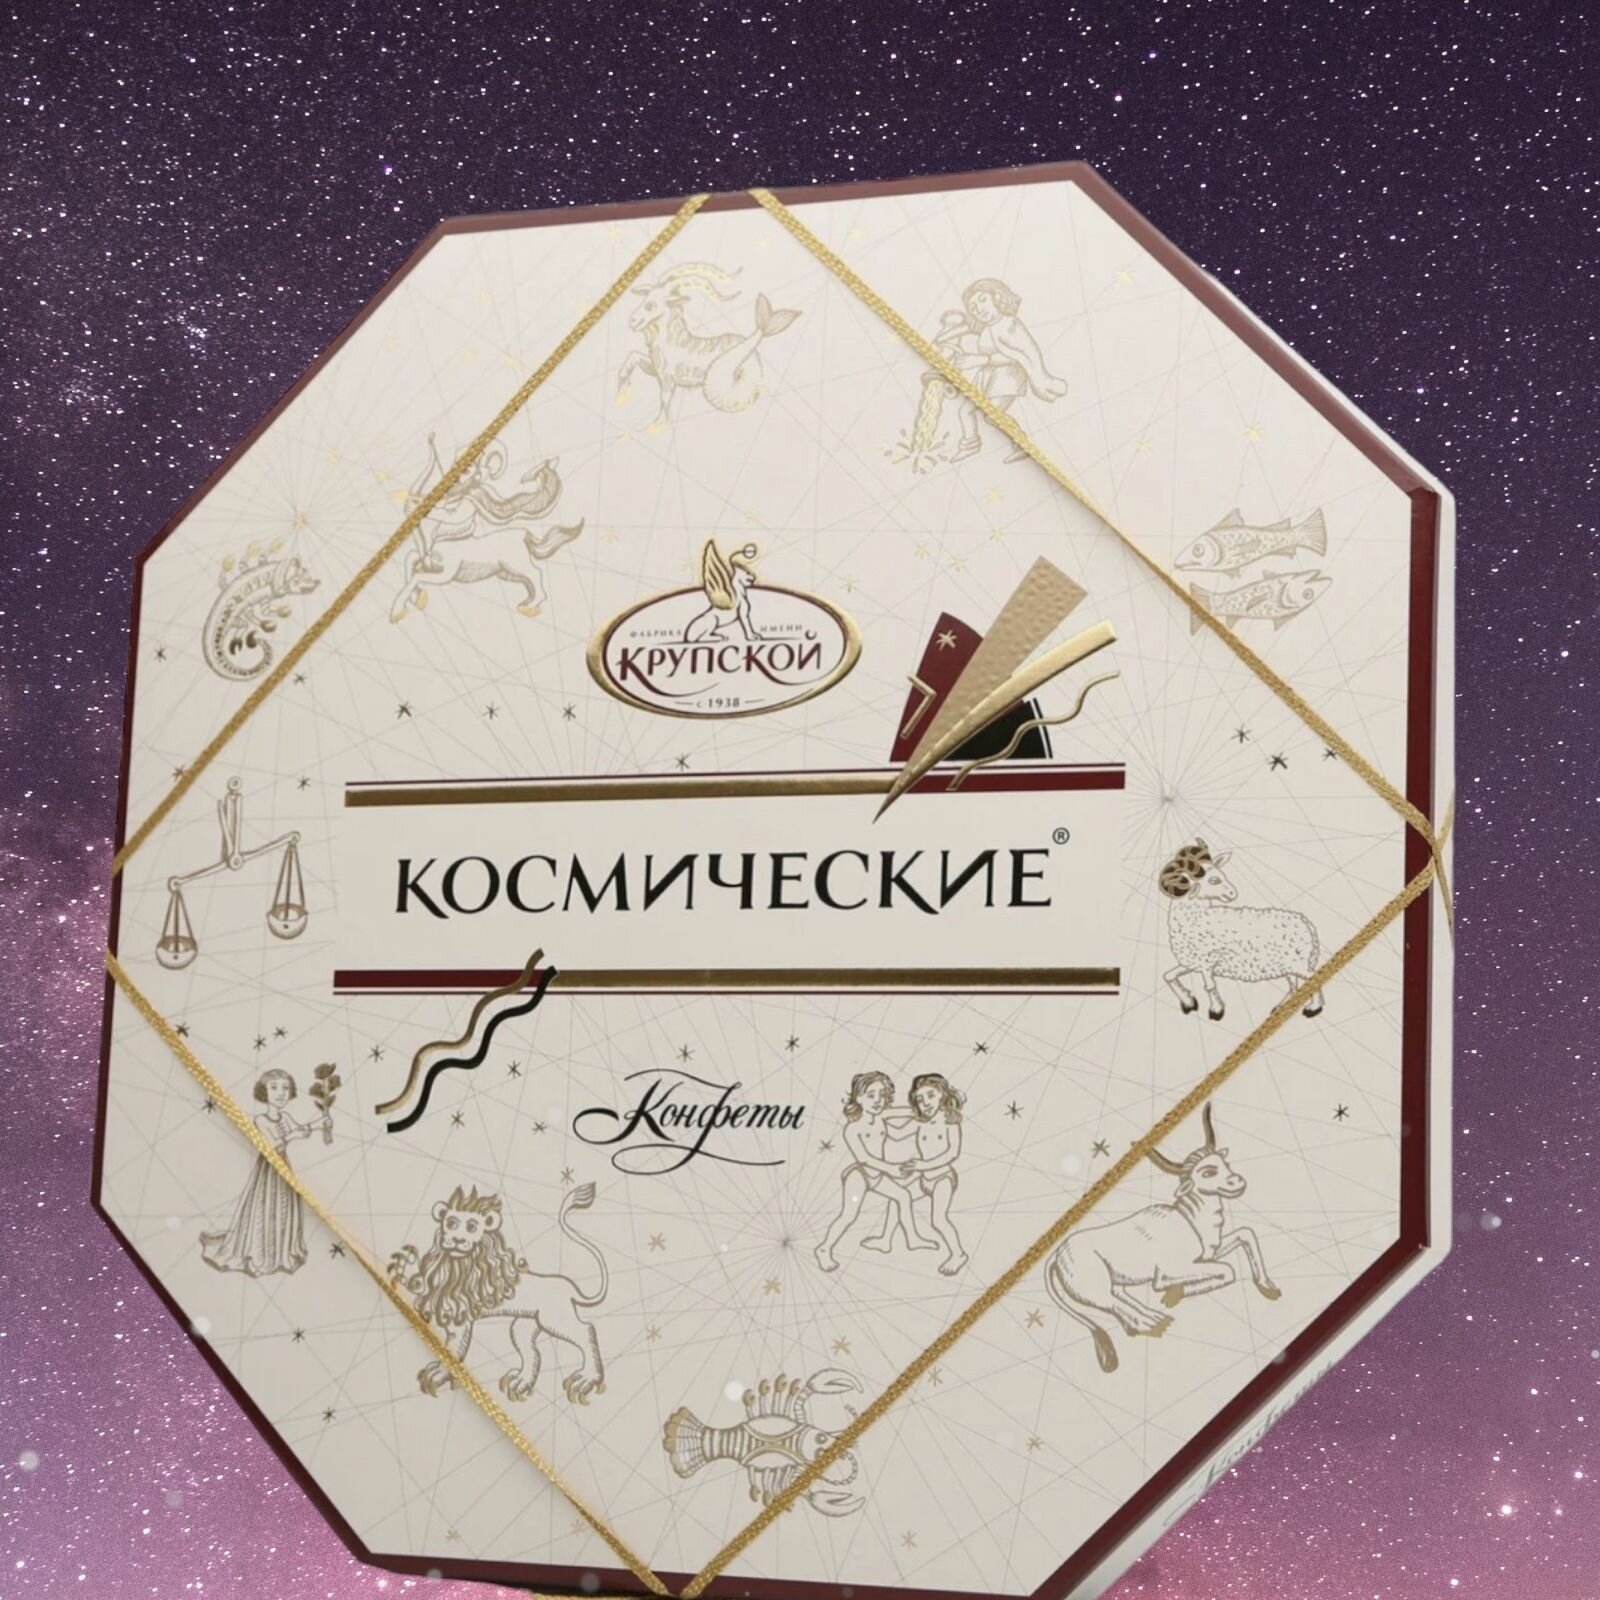 Набор конфет шоколадных Космические фабрика имени Крупской, 460 гр. Сладости в подарок женщине, мужчине на День рождения